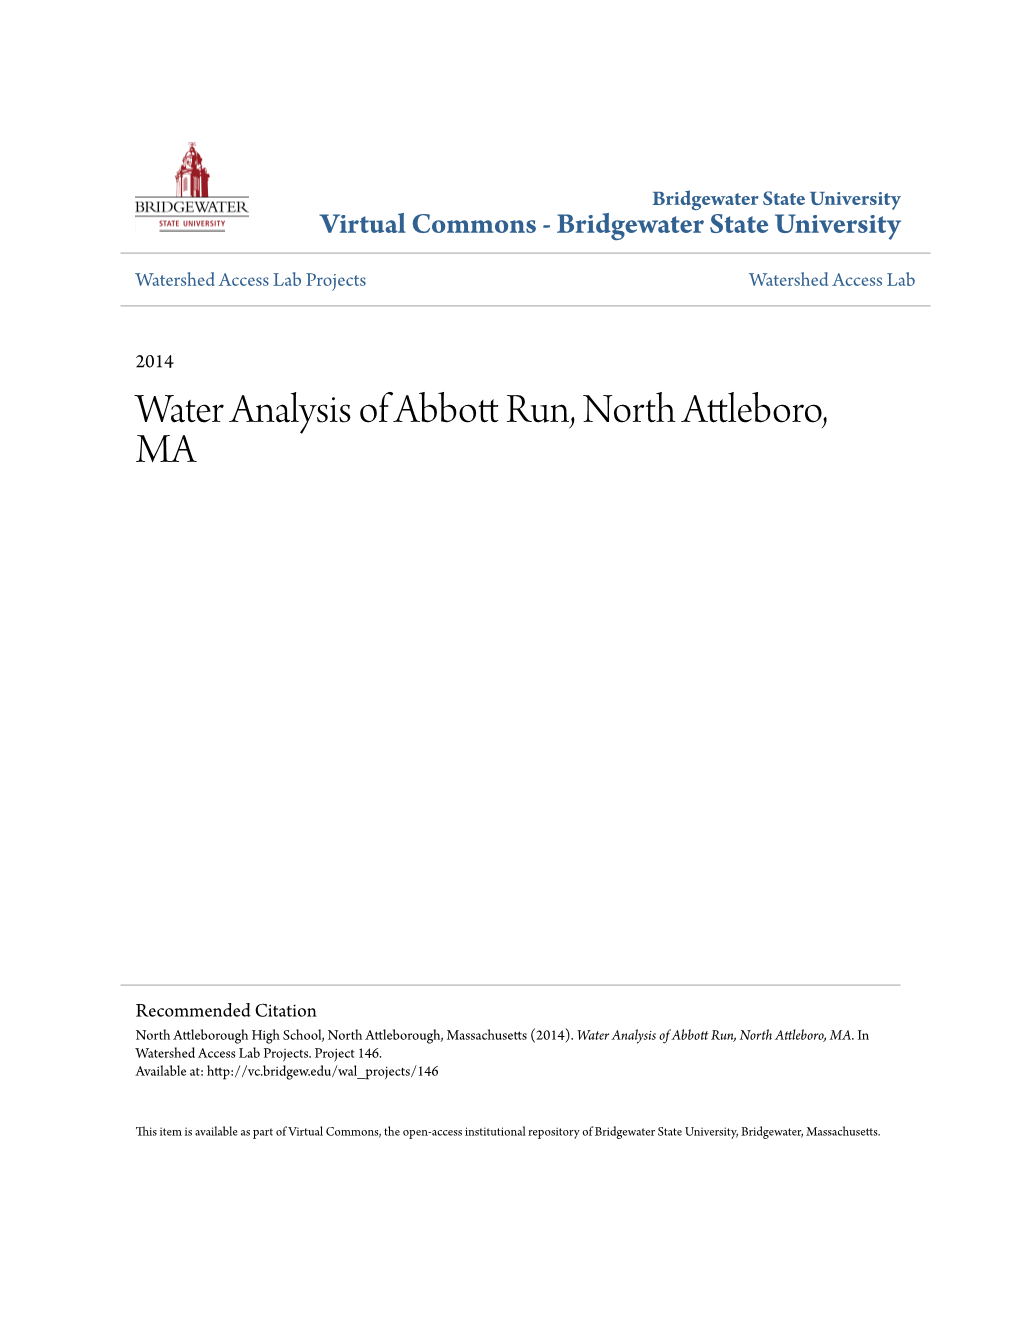 Water Analysis of Abbott Run, North Attleboro, MA